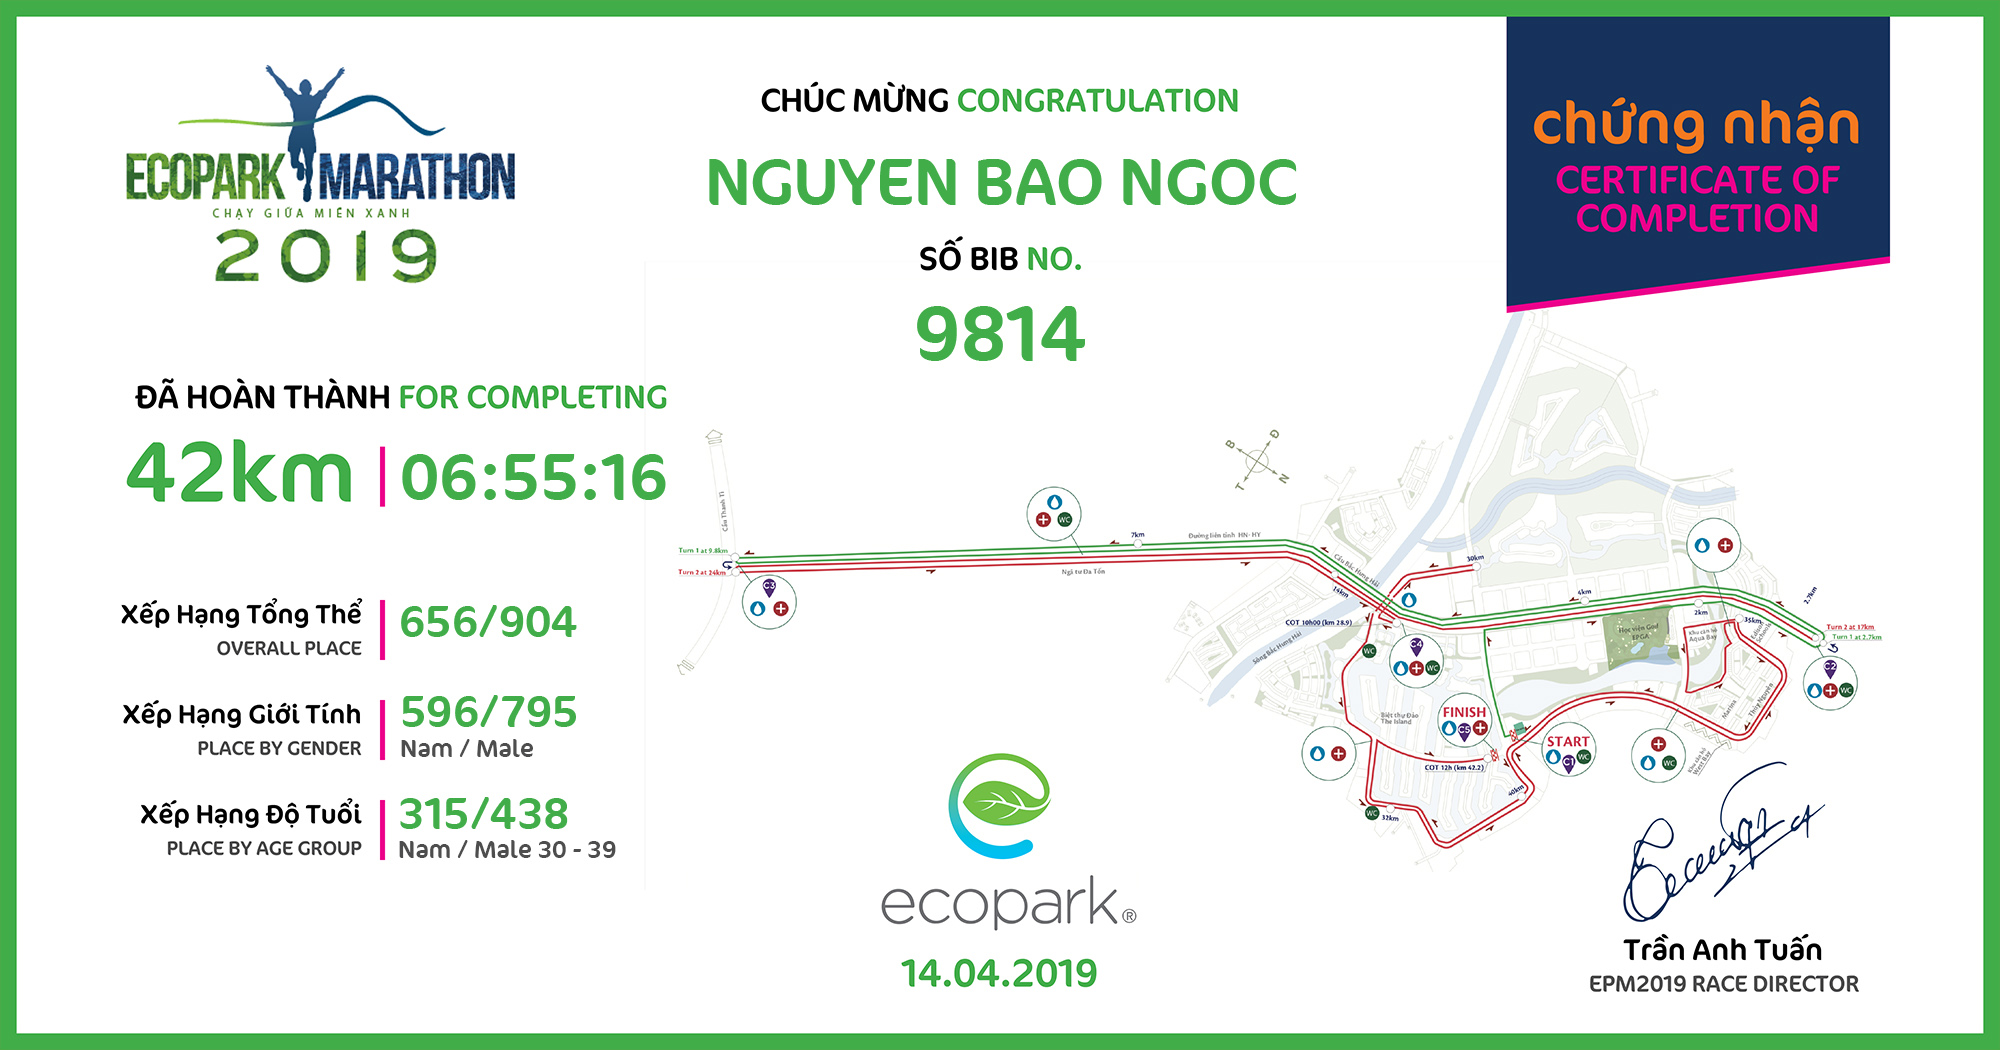 9814 - Nguyen Bao Ngoc